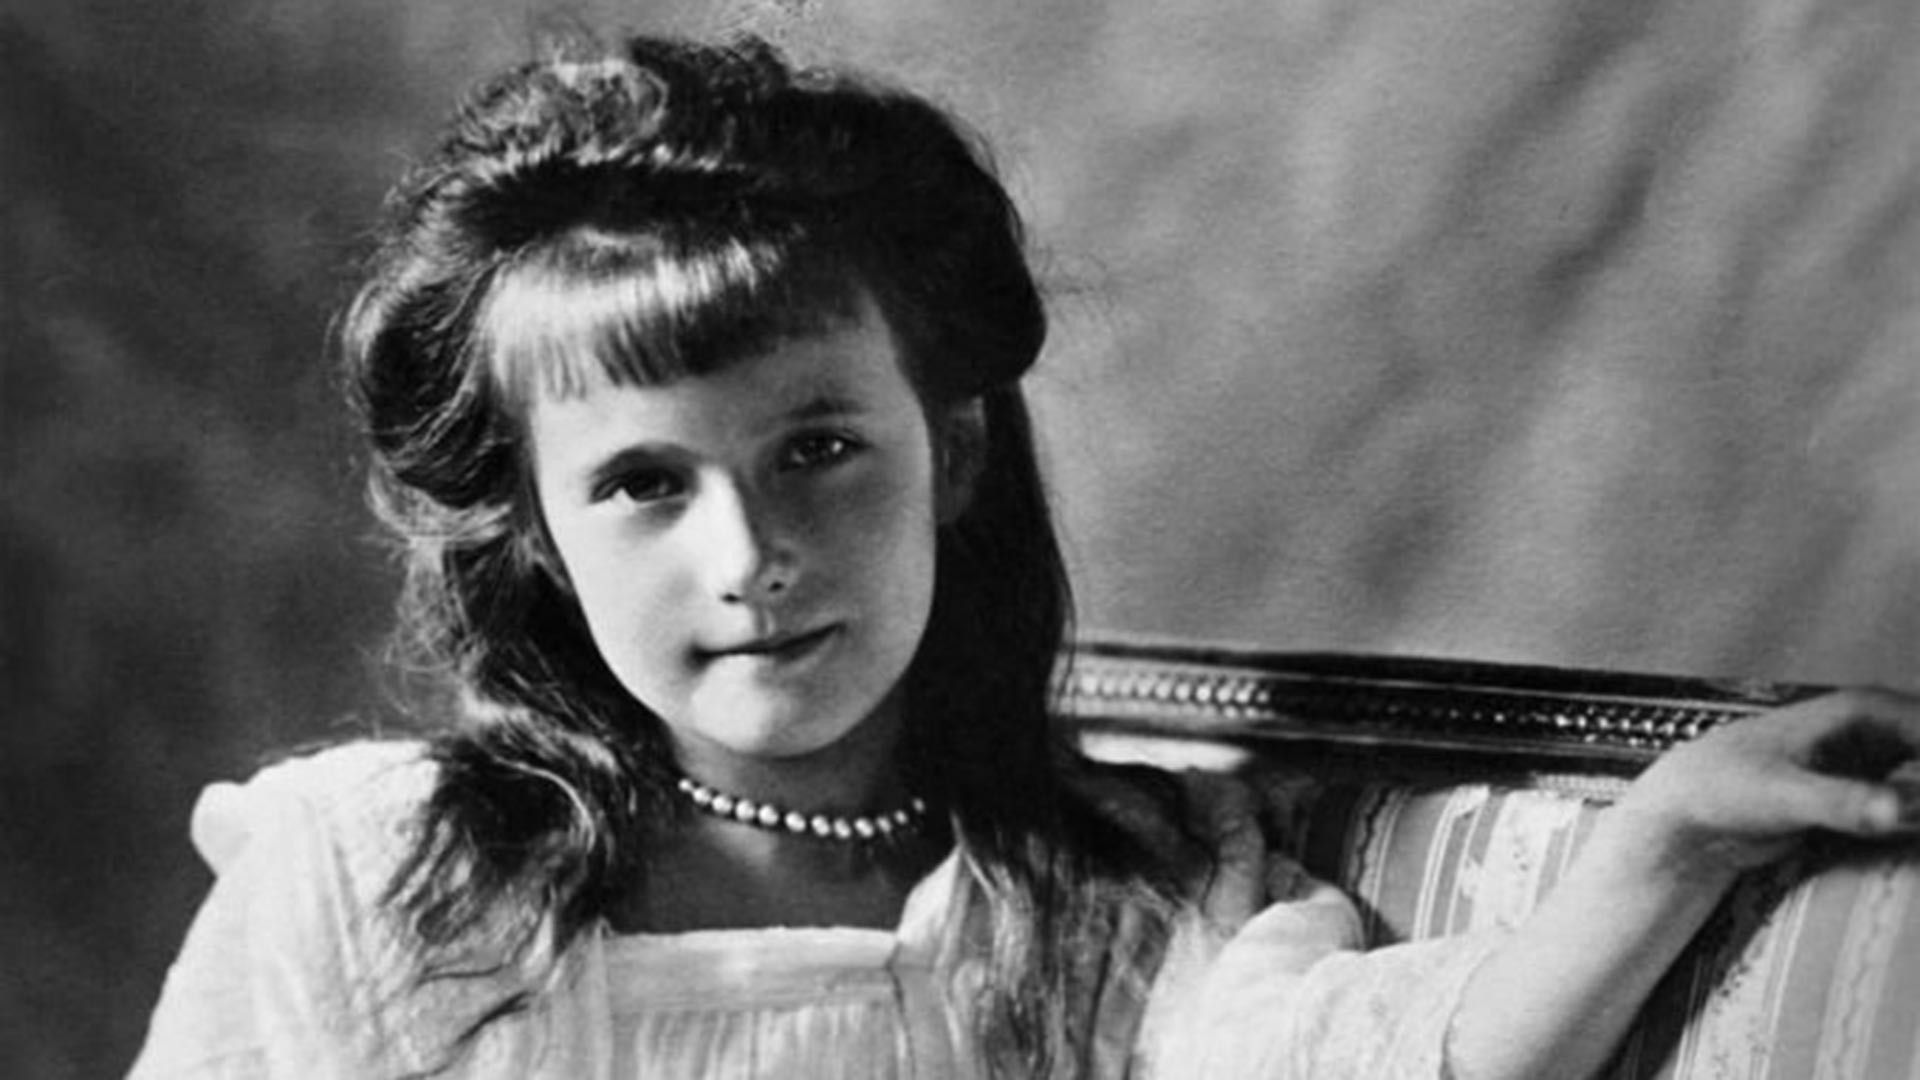 La granduchessa Anastasia in una foto d'epoca